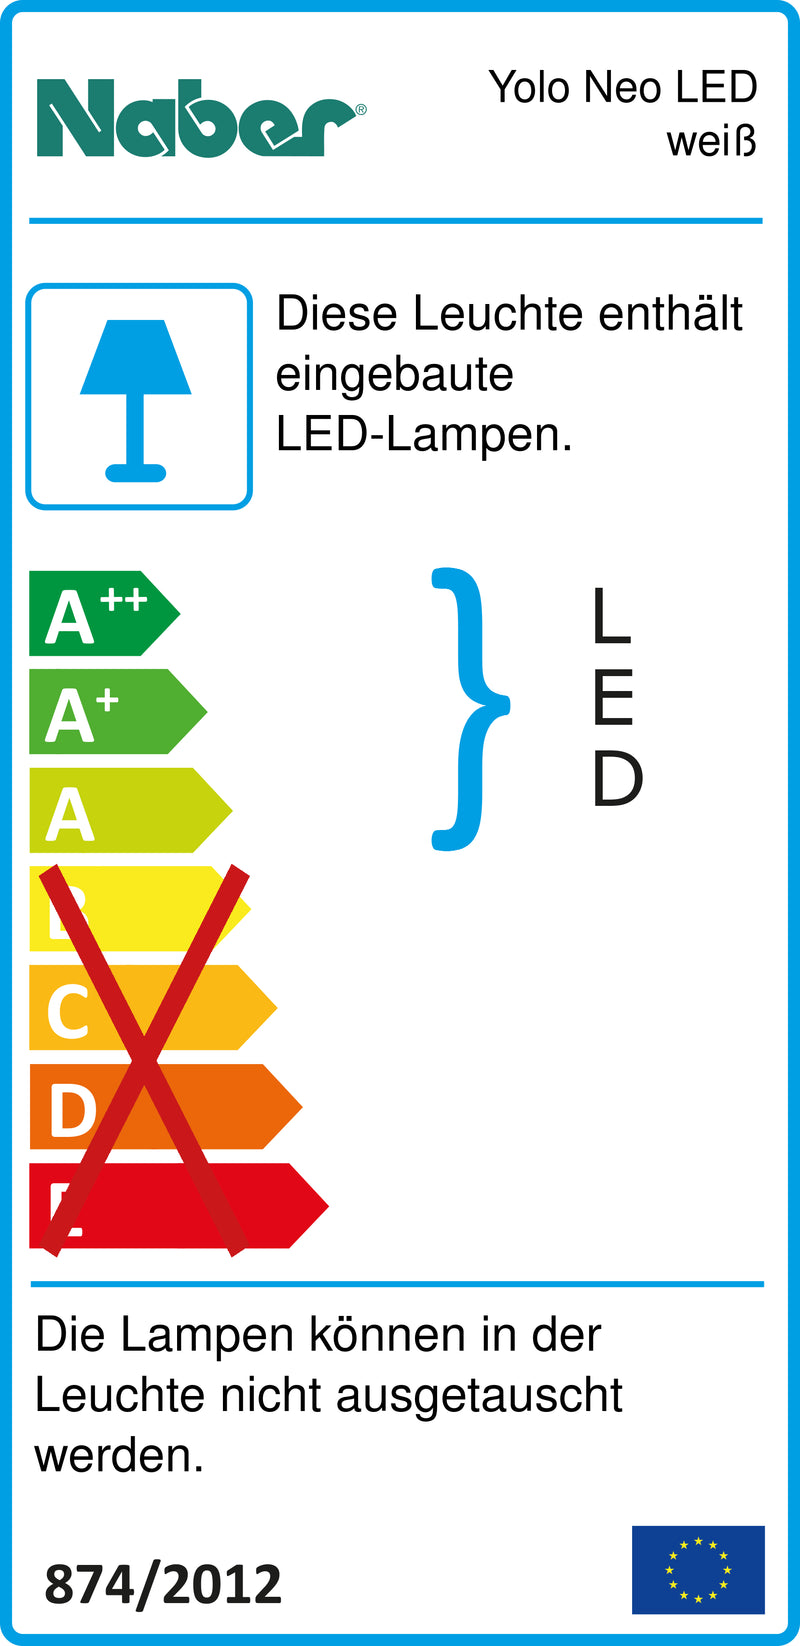 E-Label zu Zeichnung zu Yolo Neo LED weiß als Variante Einzelleuchte o. S., 3000 K warmweiß von Naber GmbH in der Kategorie Lichttechnik in Österreich auf conceptshop.at